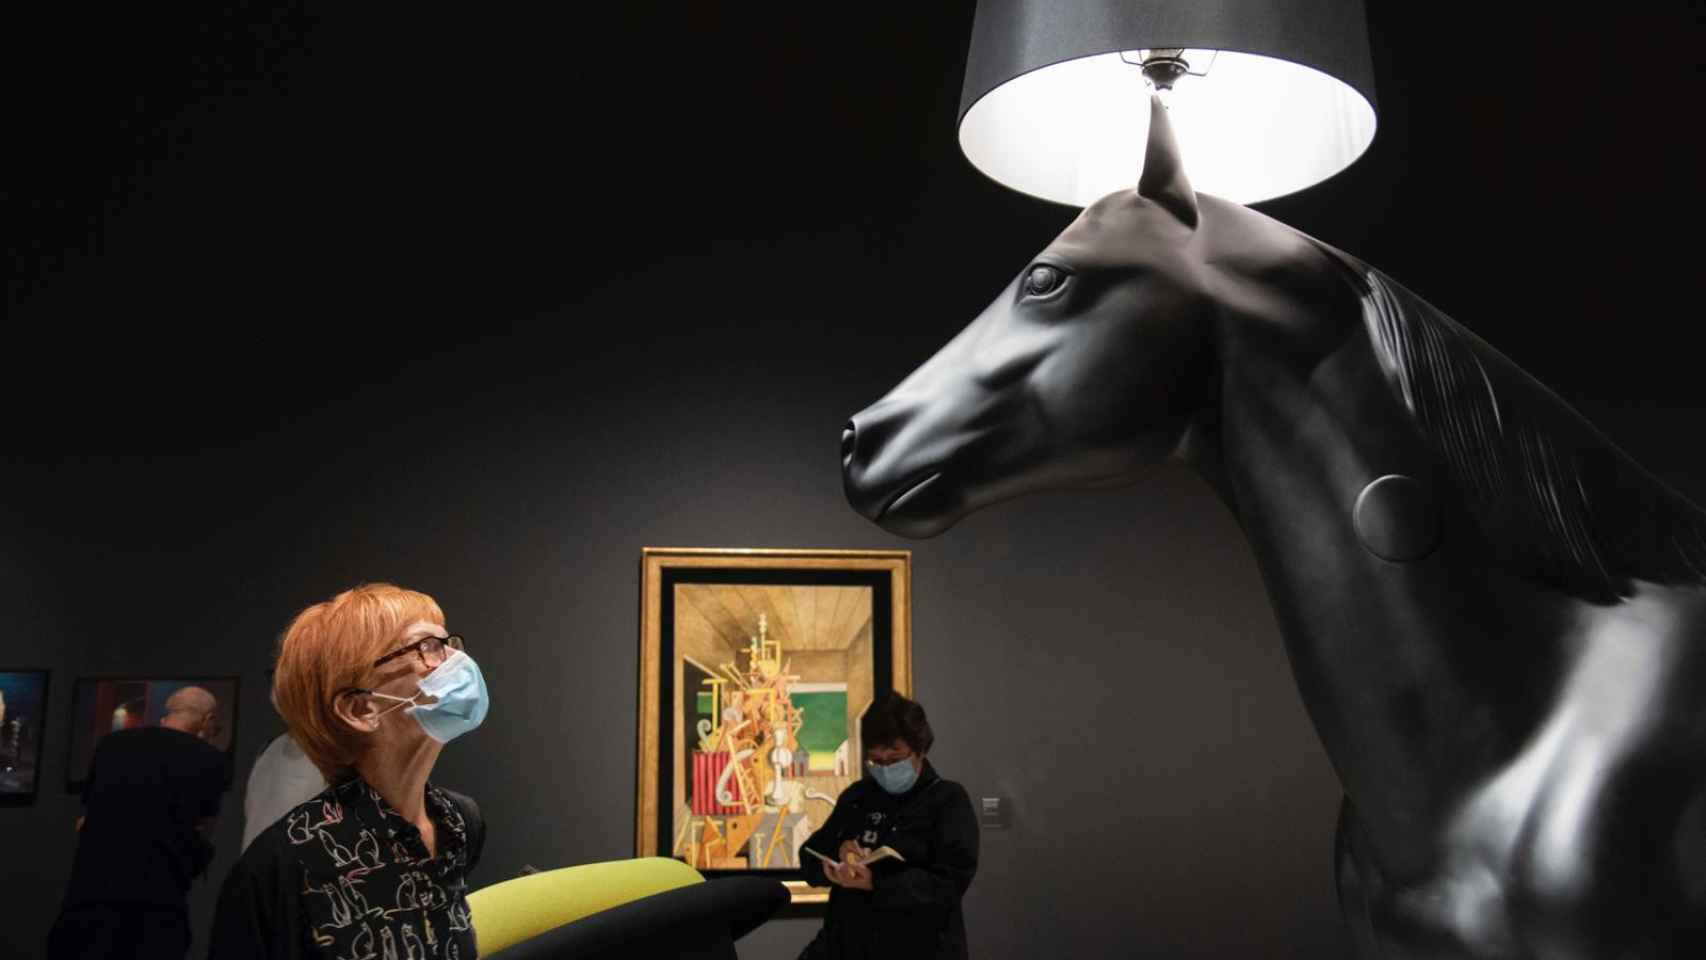 Una mujer observa con atención una escultura este lunes en CaixaForum Barcelona / CAIXAFORUM